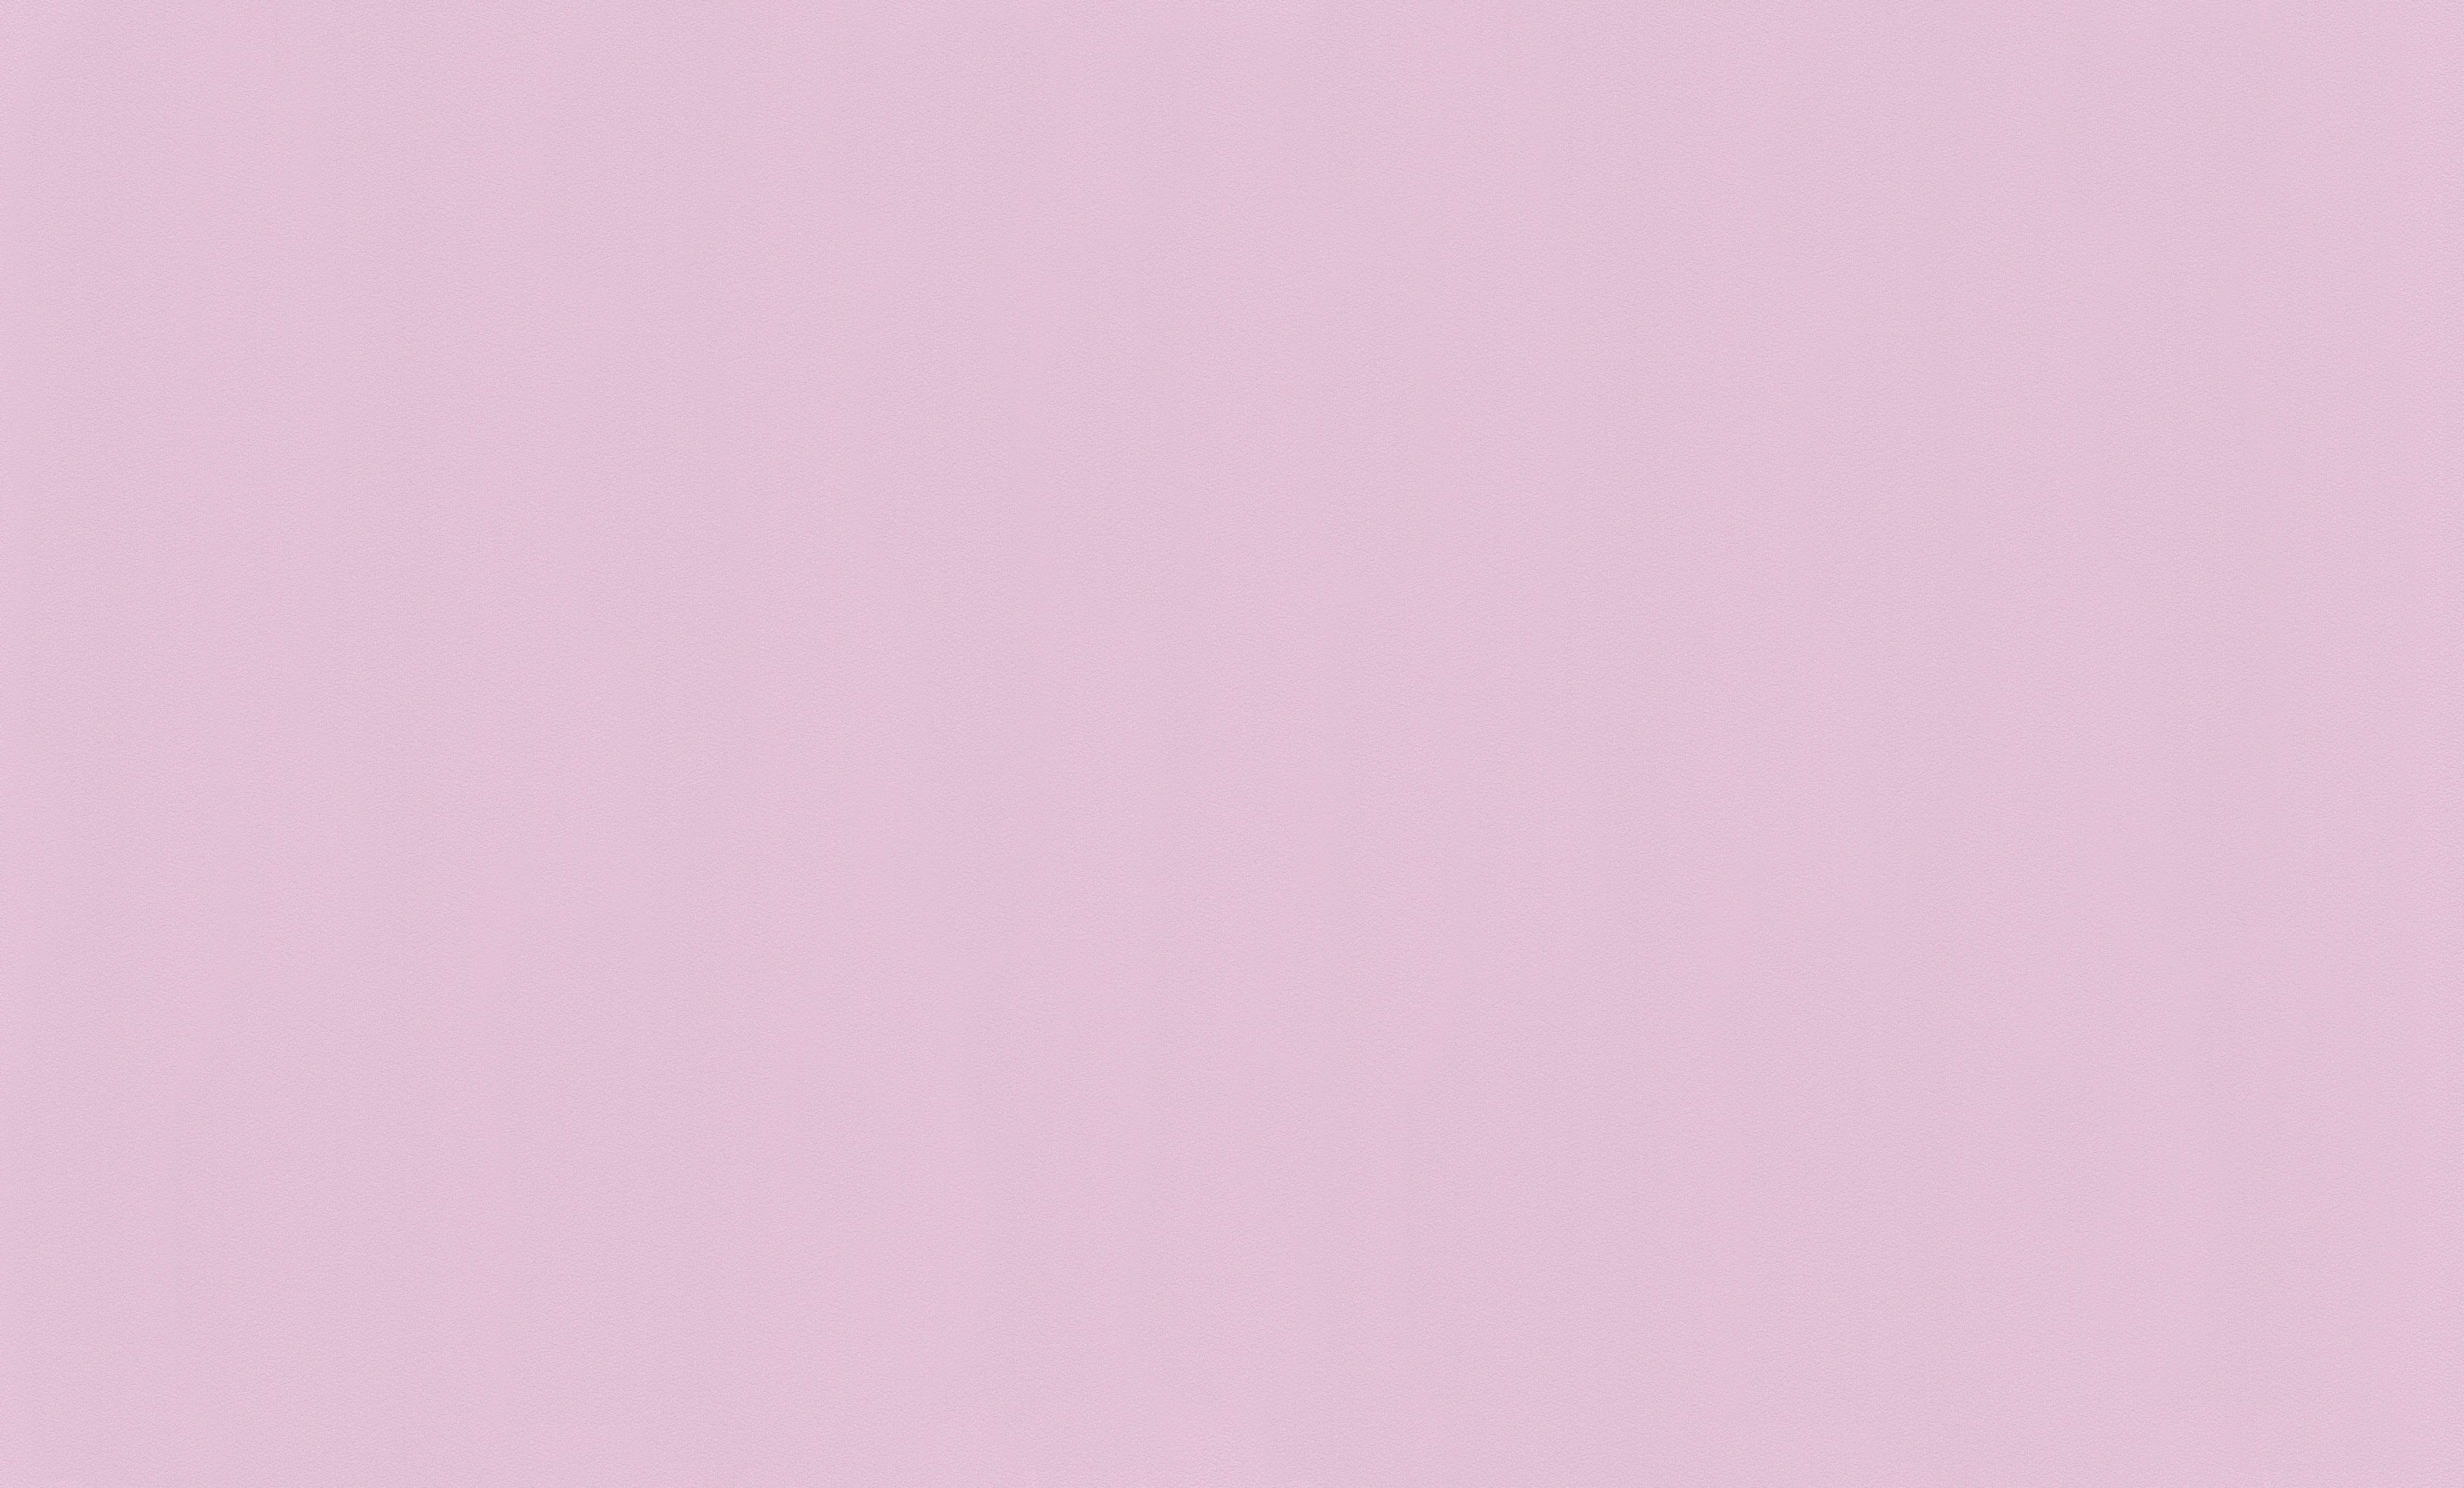 Как пишется бледно розовый. Розовый антик u325 st9. Бледно-розовый цвет. Пастельный фон. Розовый светлый.